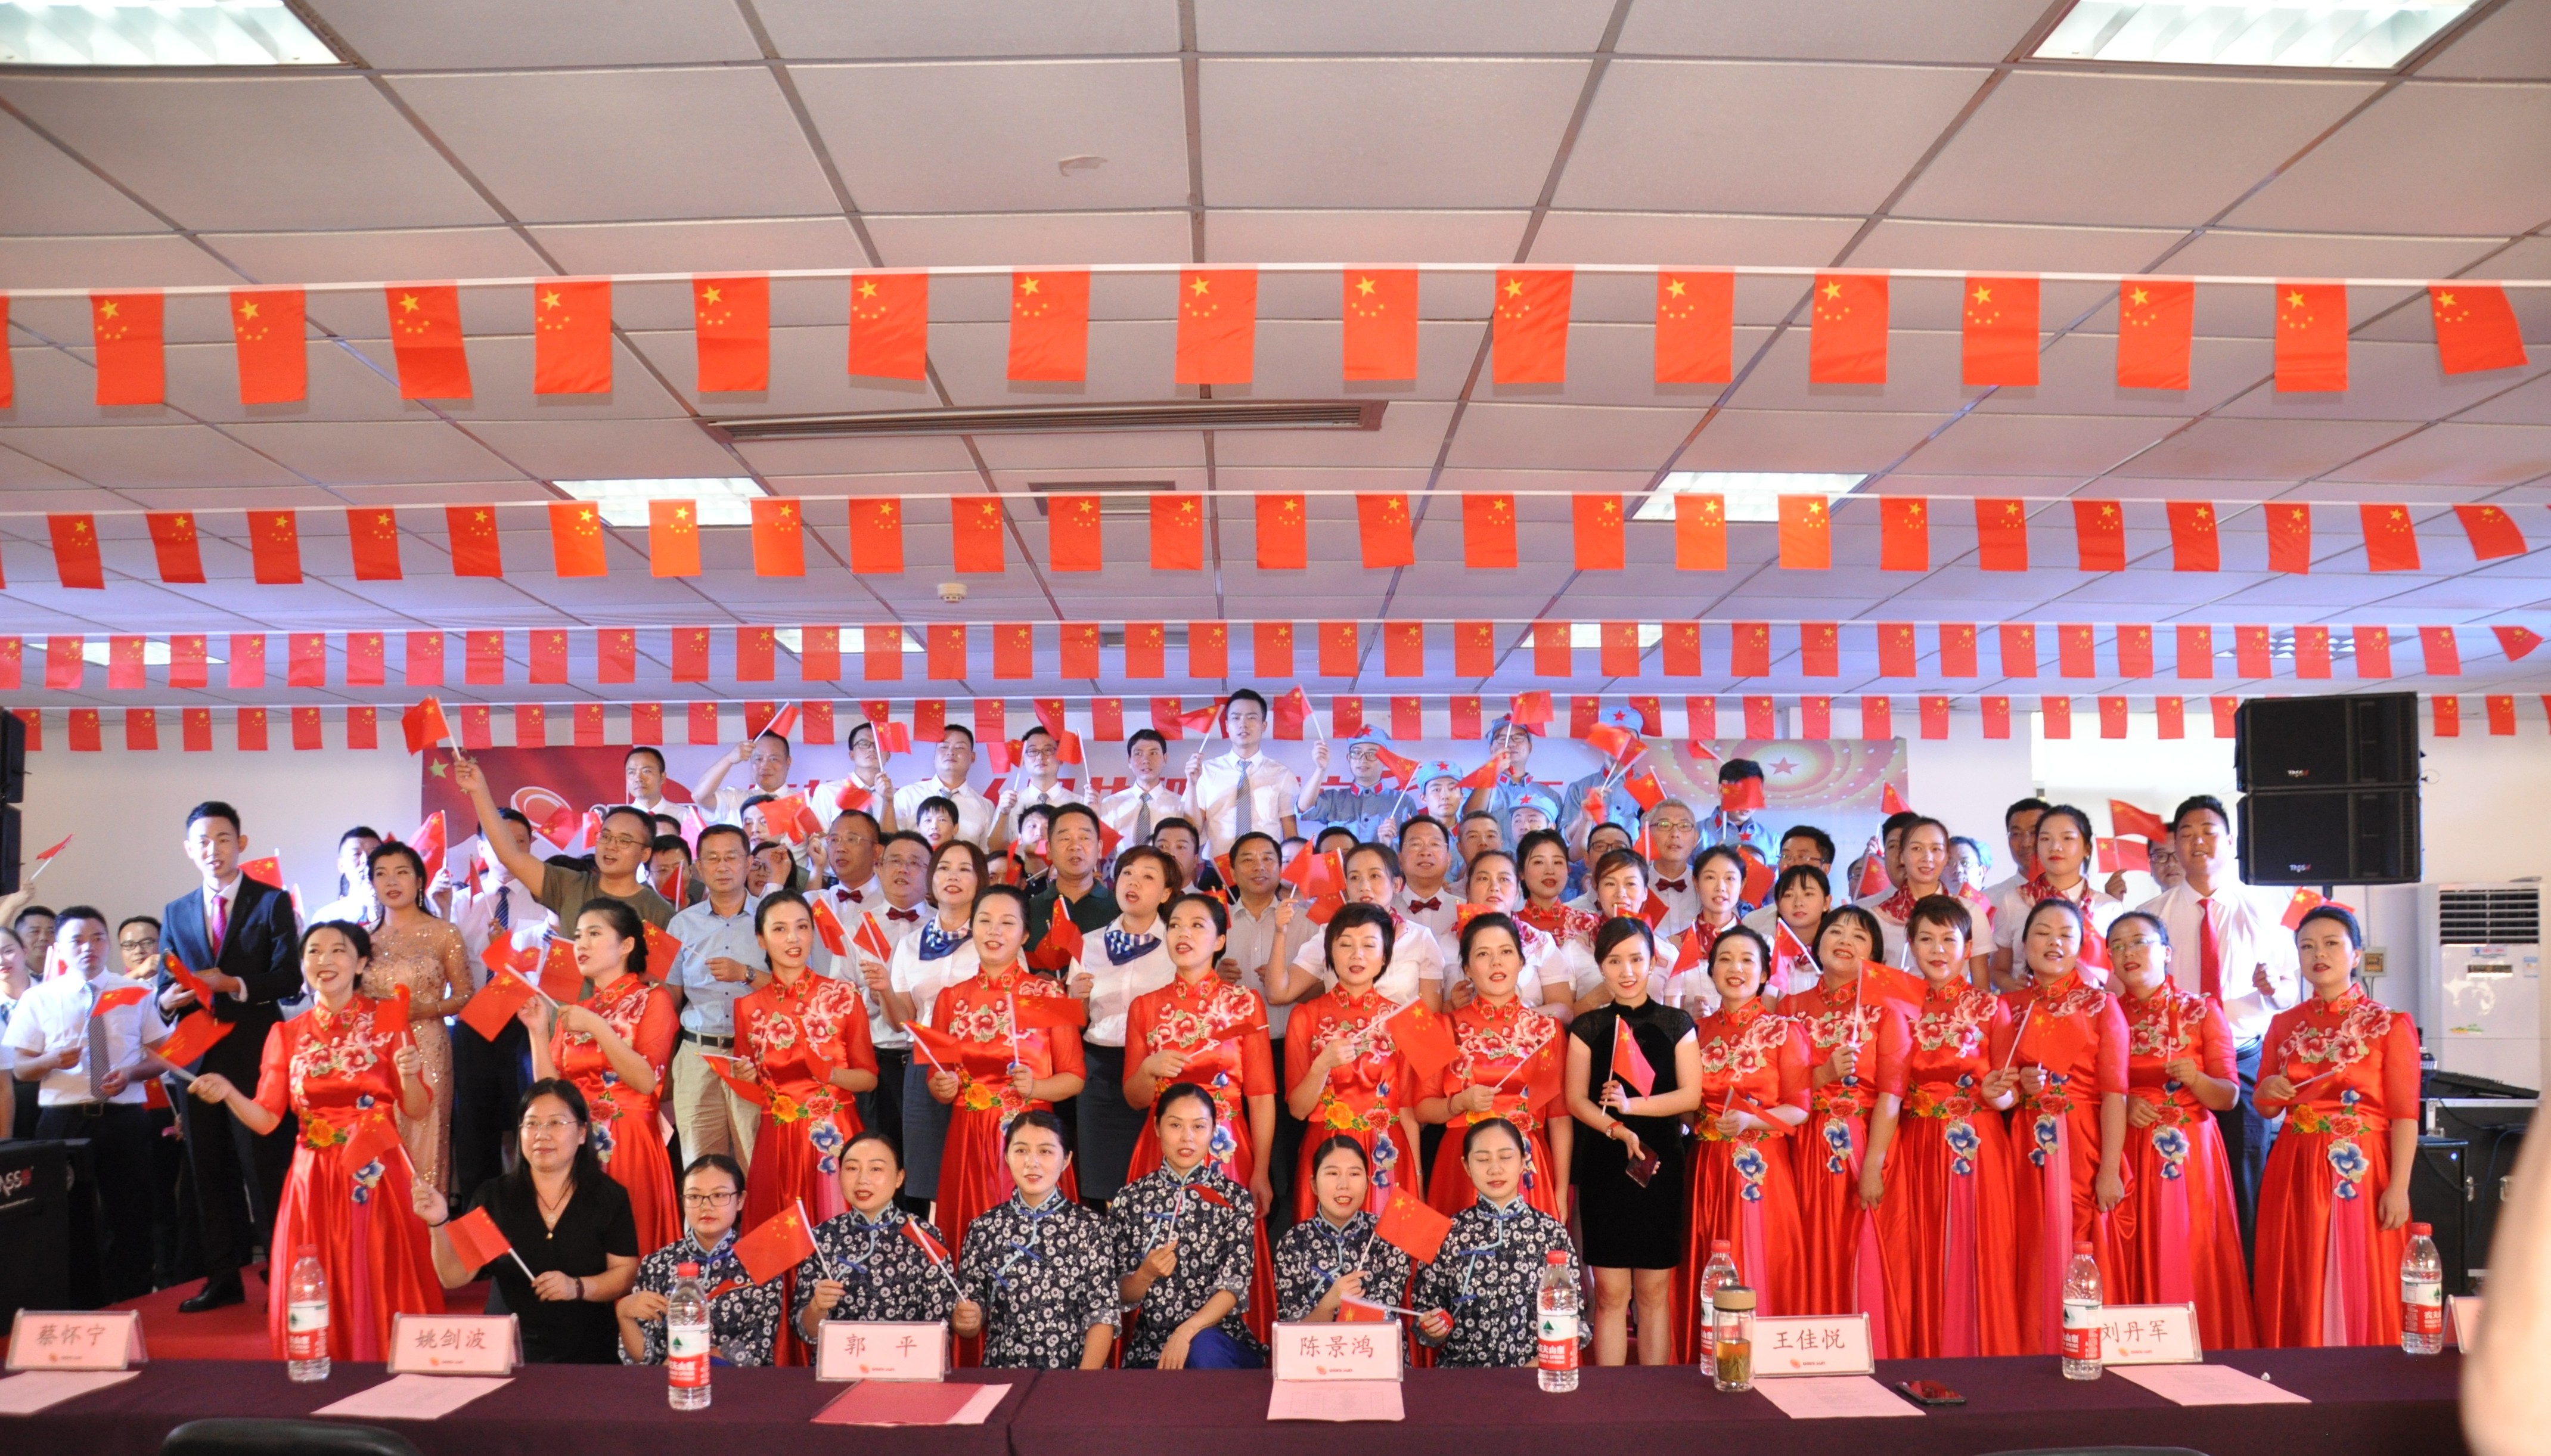 半岛手机版(中国)半岛有限公司隆重举办庆祝中华人民共和国成立70周年“普照杯”歌咏比赛